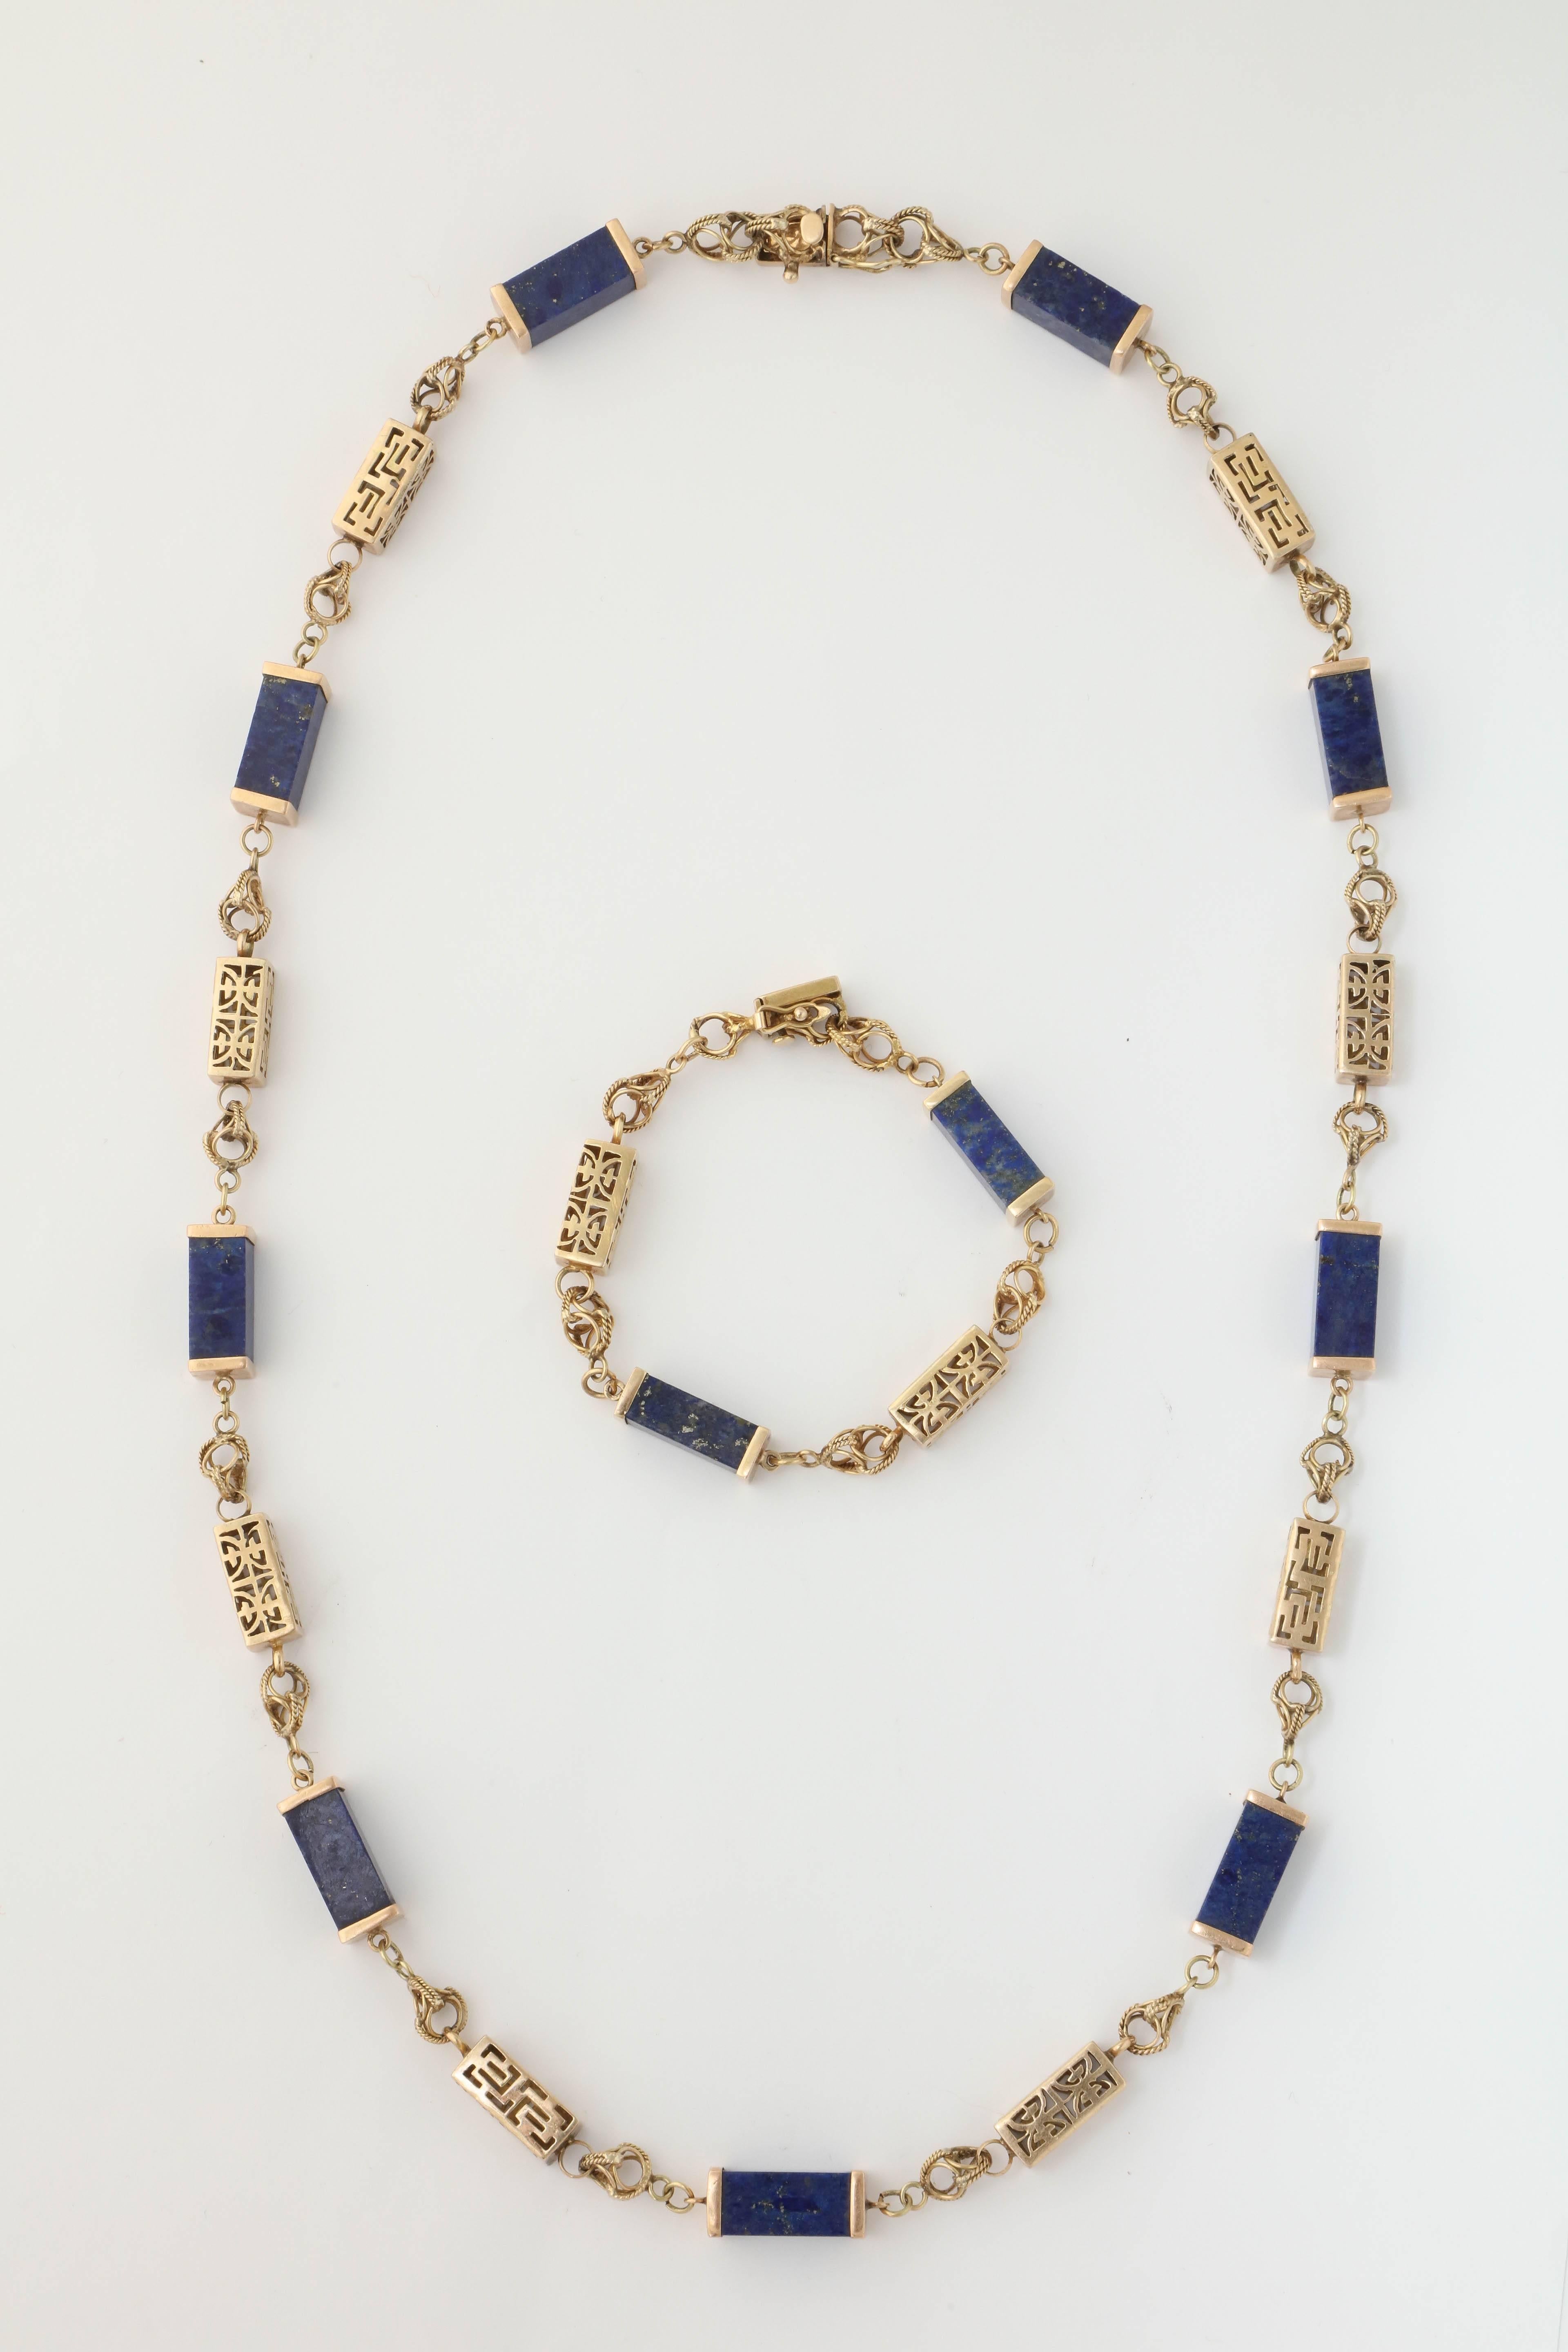 1950s Lapis Lazuli Gold Necklace Bracelet Long Chain Combination  3